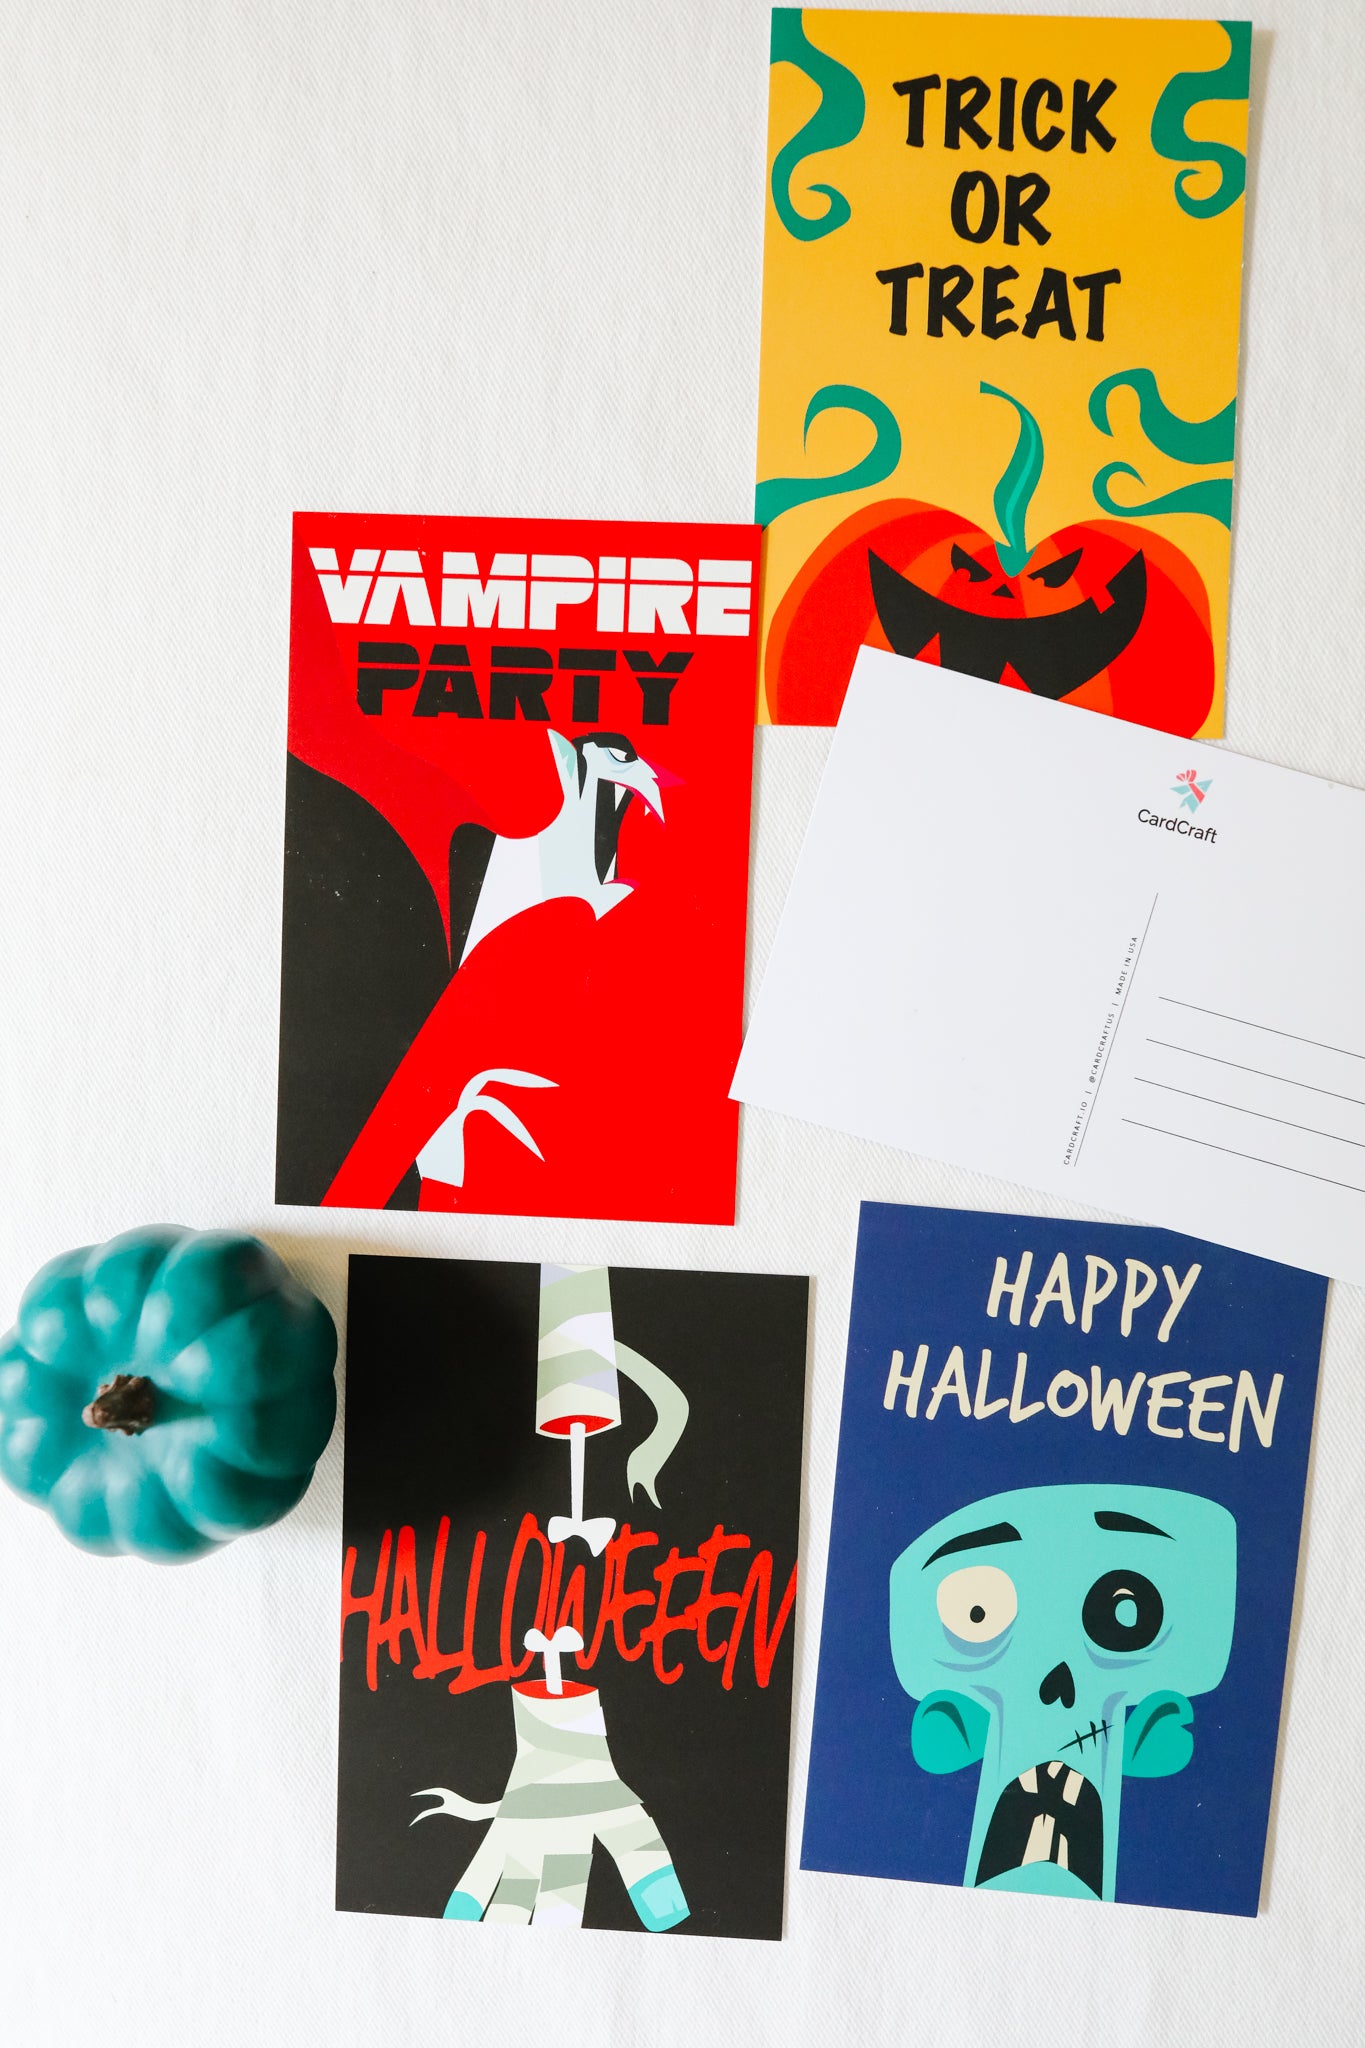 Happy Halloween! Five Spooky Halloween Postcards